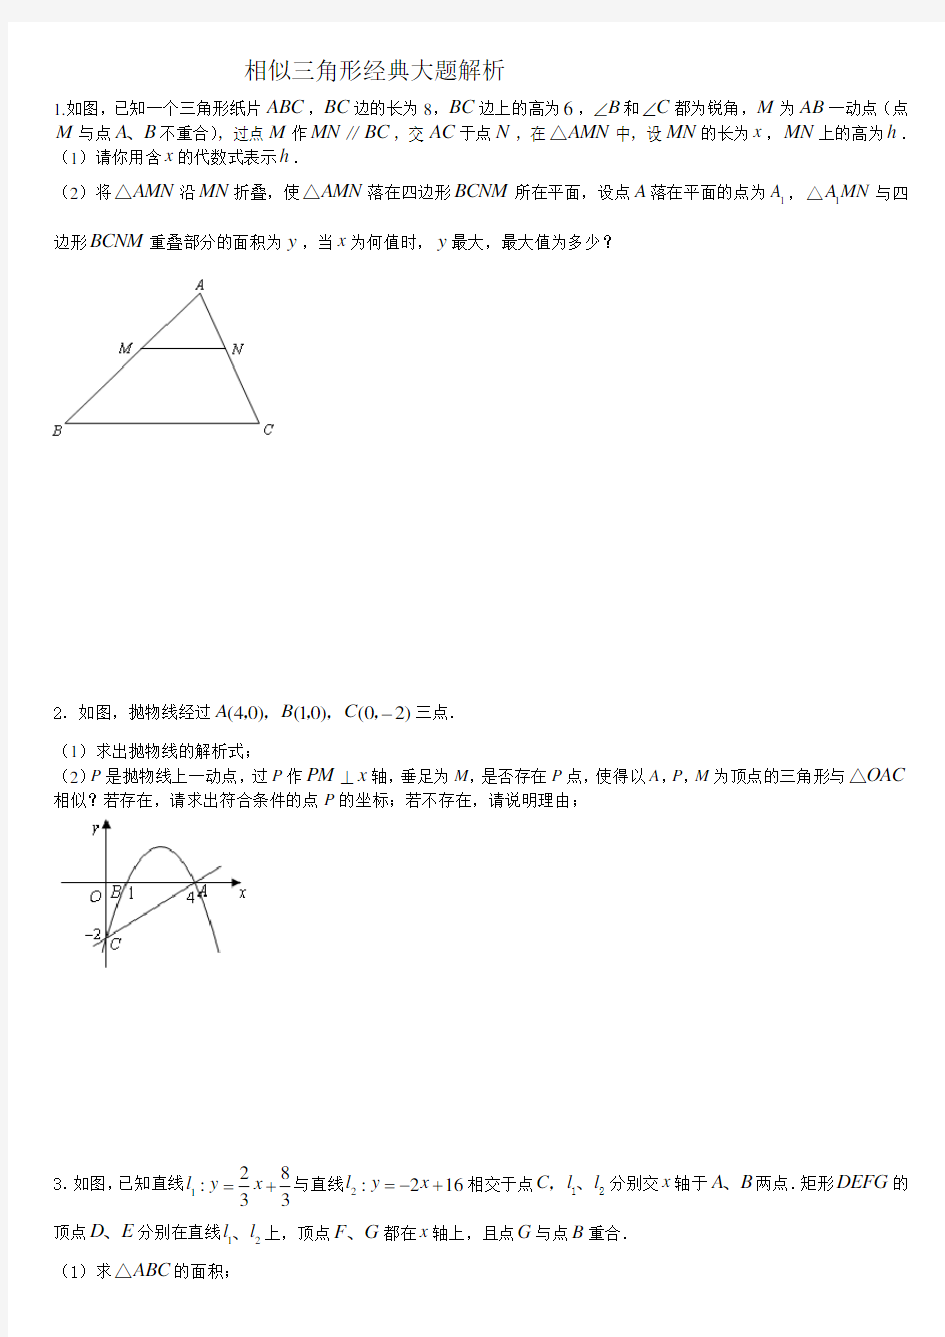 相似三角形经典大题解析(含答案)